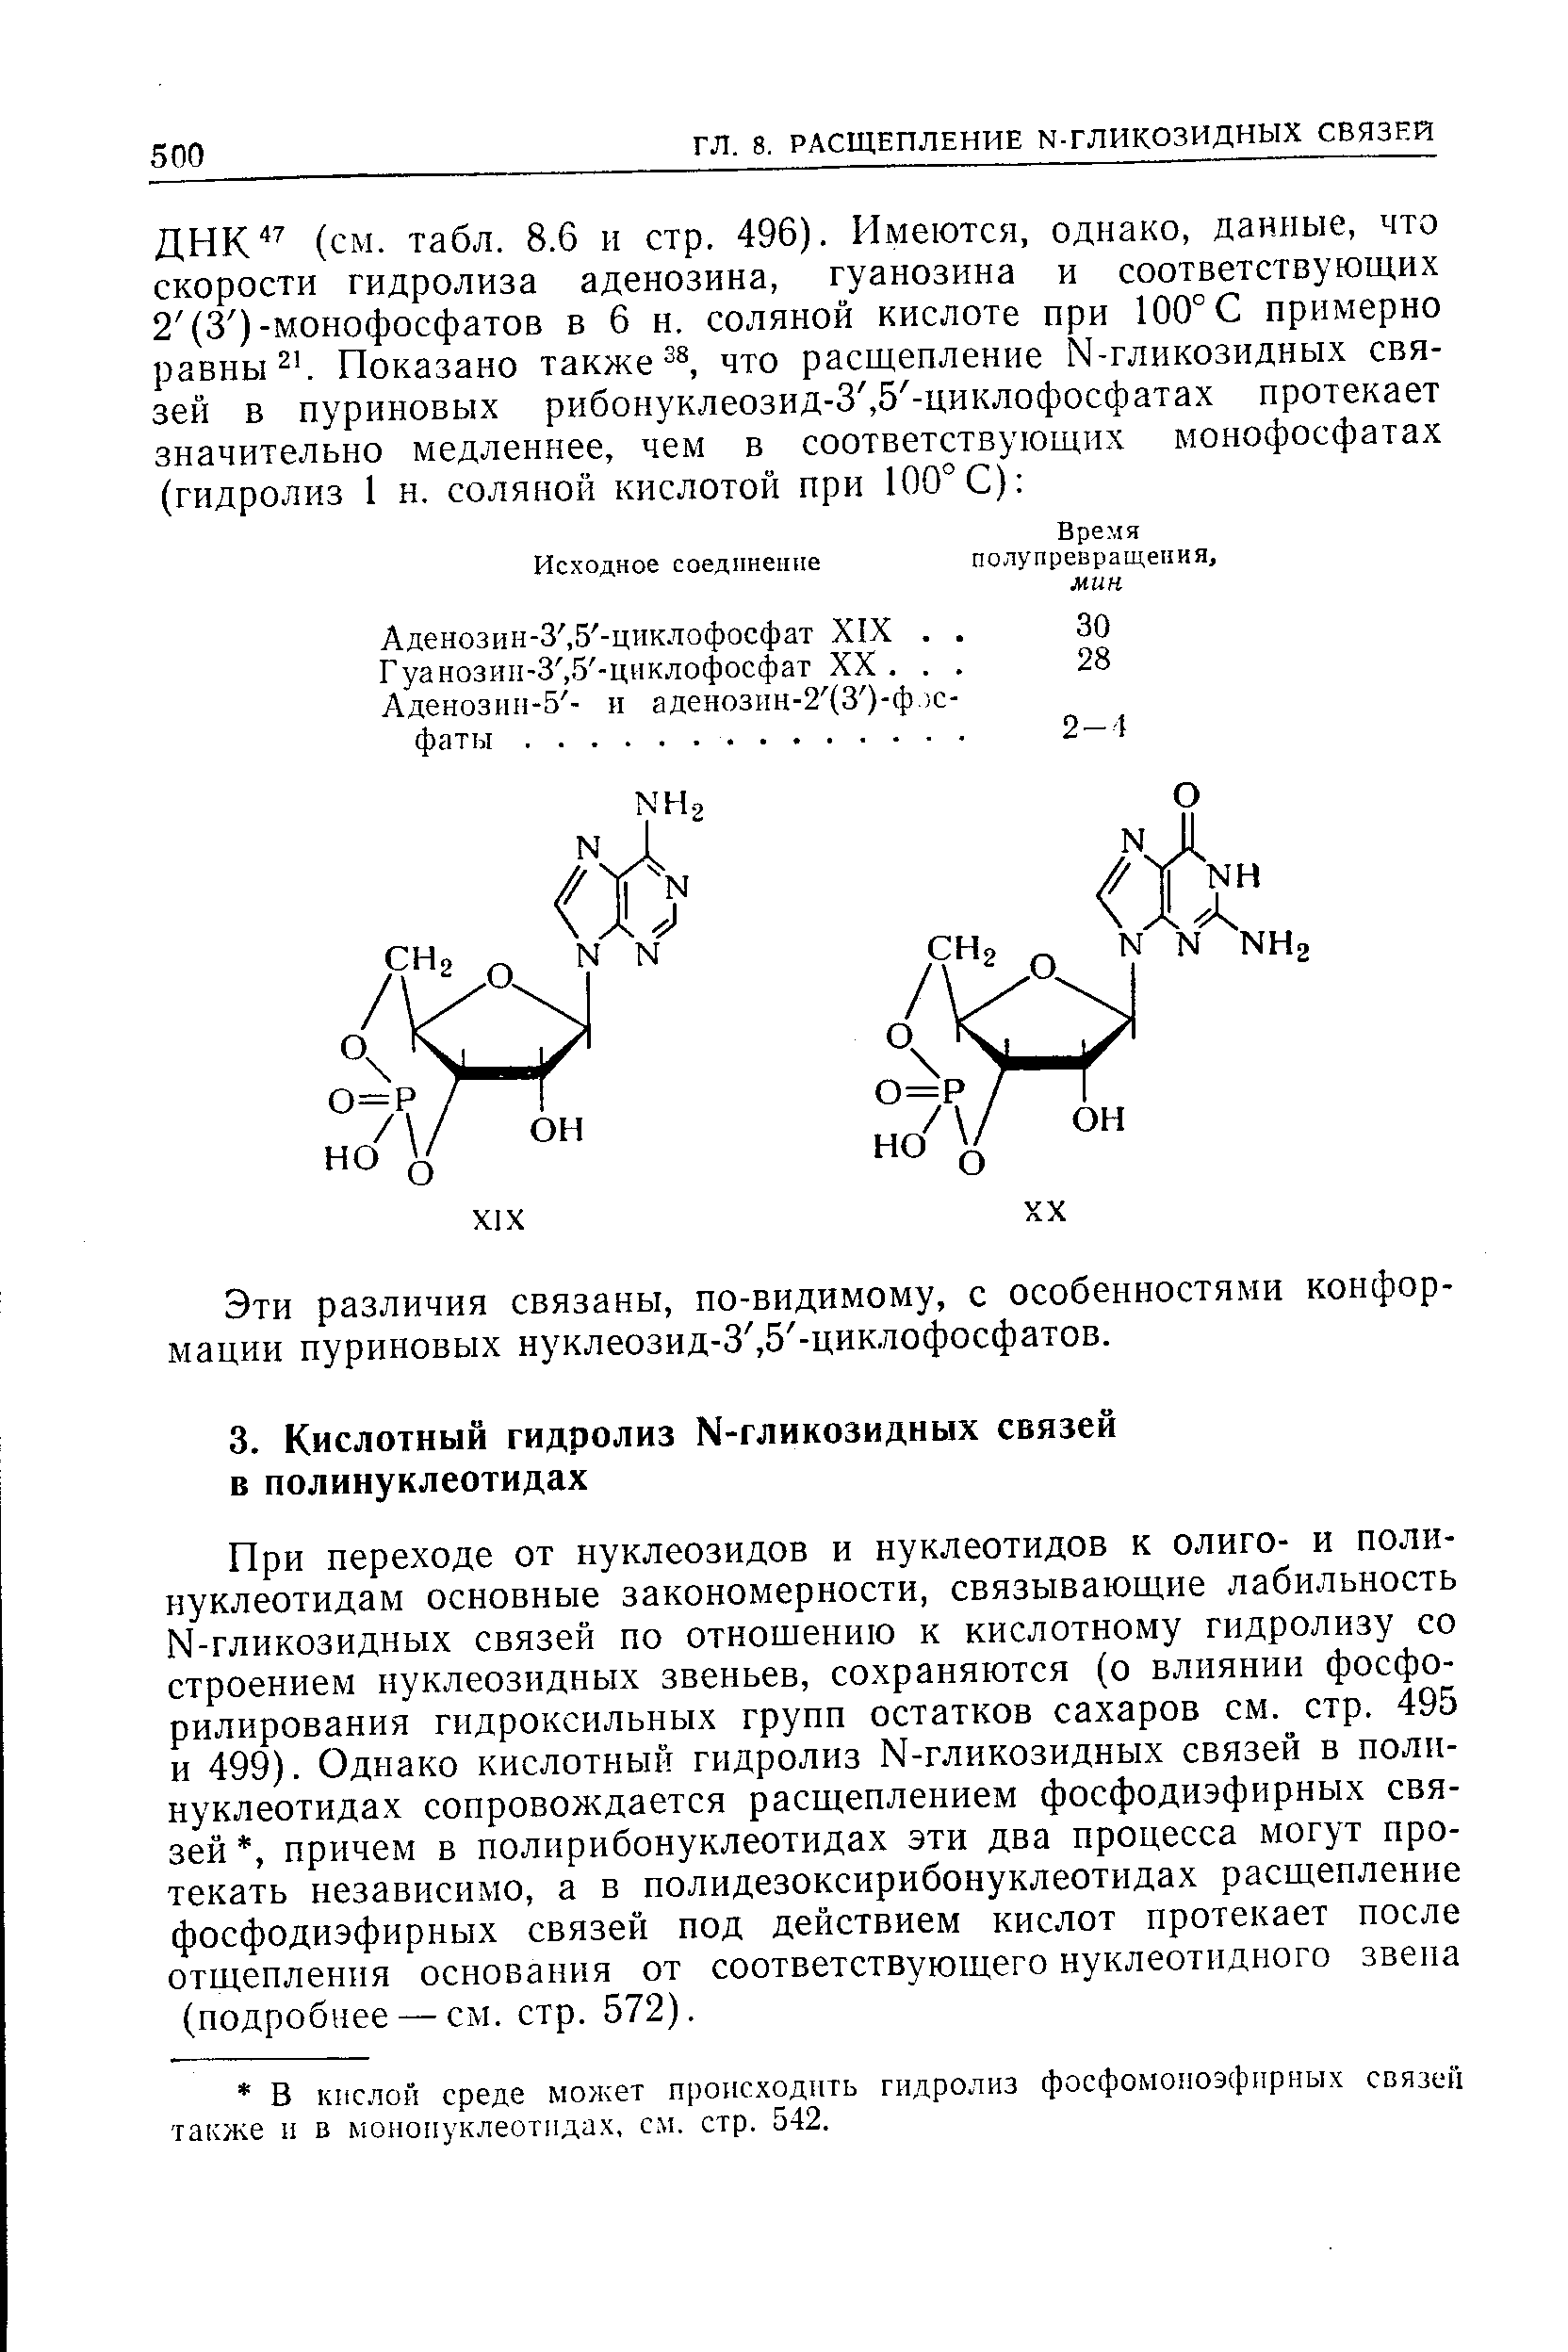 При переходе от нуклеозидов и нуклеотидов к олиго- и полинуклеотидам основные закономерности, связывающие лабильность N-гликозидных связей по отношению к кислотному гидролизу со строением нуклеозидных звеньев, сохраняются (о влиянии фосфо-рилирования гидроксильных групп остатков сахаров см. стр. 495 и 499). Однако кислотный гидролиз N-гликозидных связей в полинуклеотидах сопровождается расщеплением фосфодиэфирных связей , причем в полнрибонуклеотидах эти два процесса могут протекать независимо, а в полидезоксирибонуклеотидах расщепление фосфодиэфирных связей под действием кислот протекает после отщепления основания от соответствующего нуклеотидного звена (подробнее — см. стр. 572).